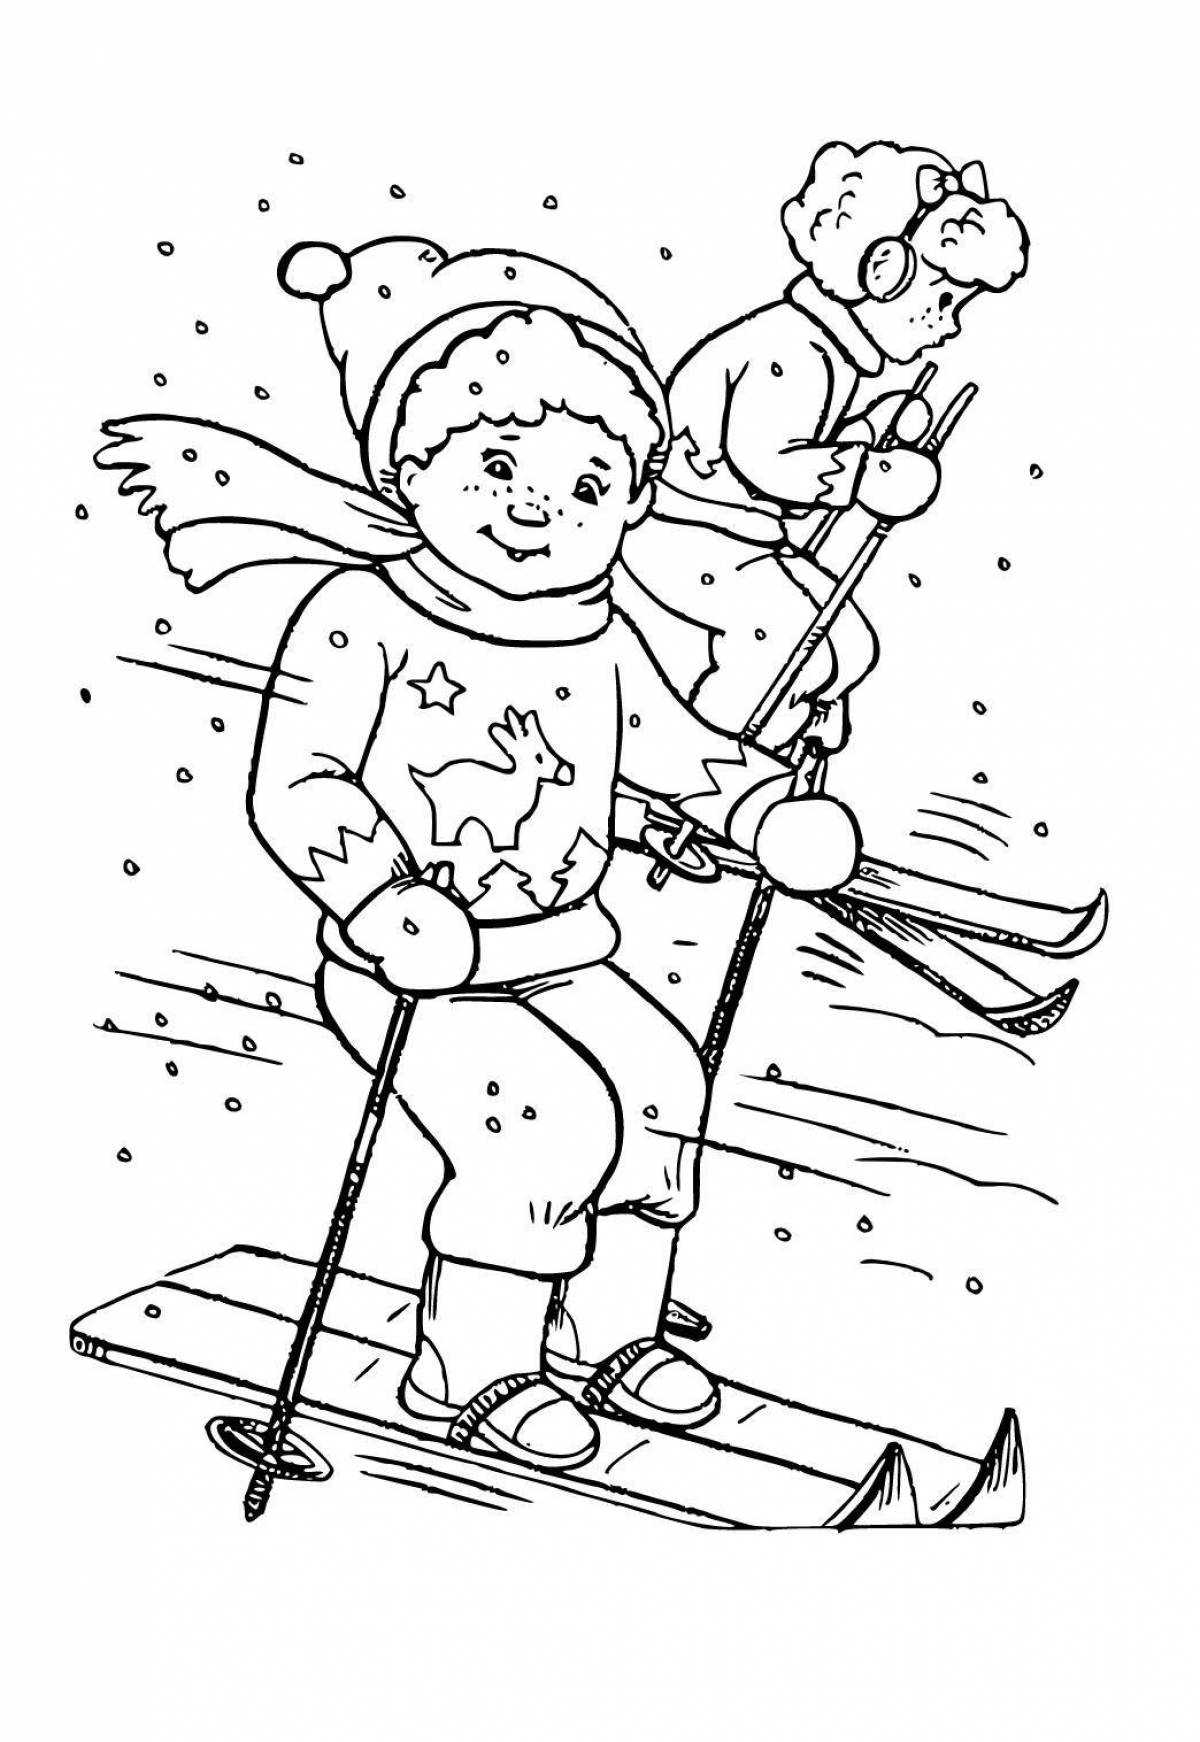 Лыжник раскраска для детей